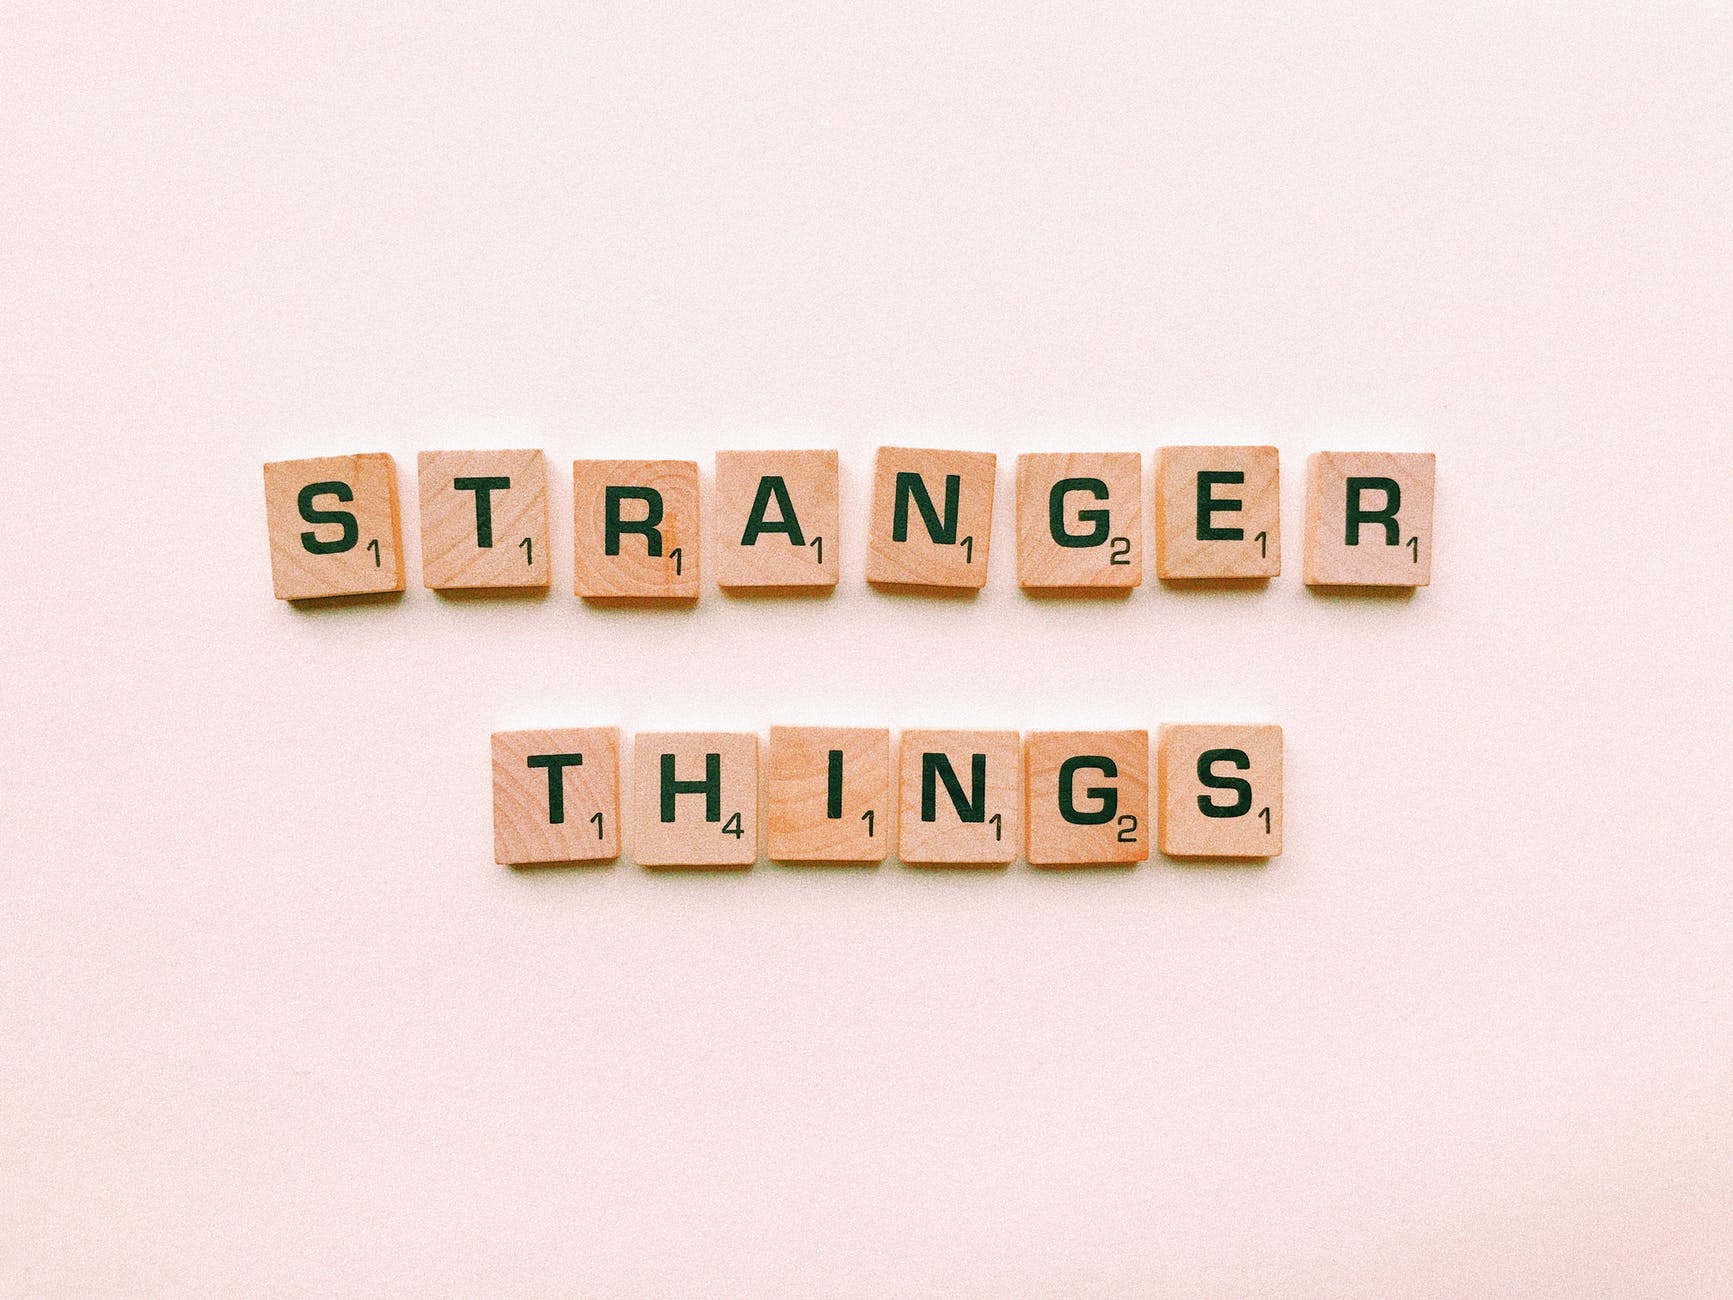 STRANGER-THINGS